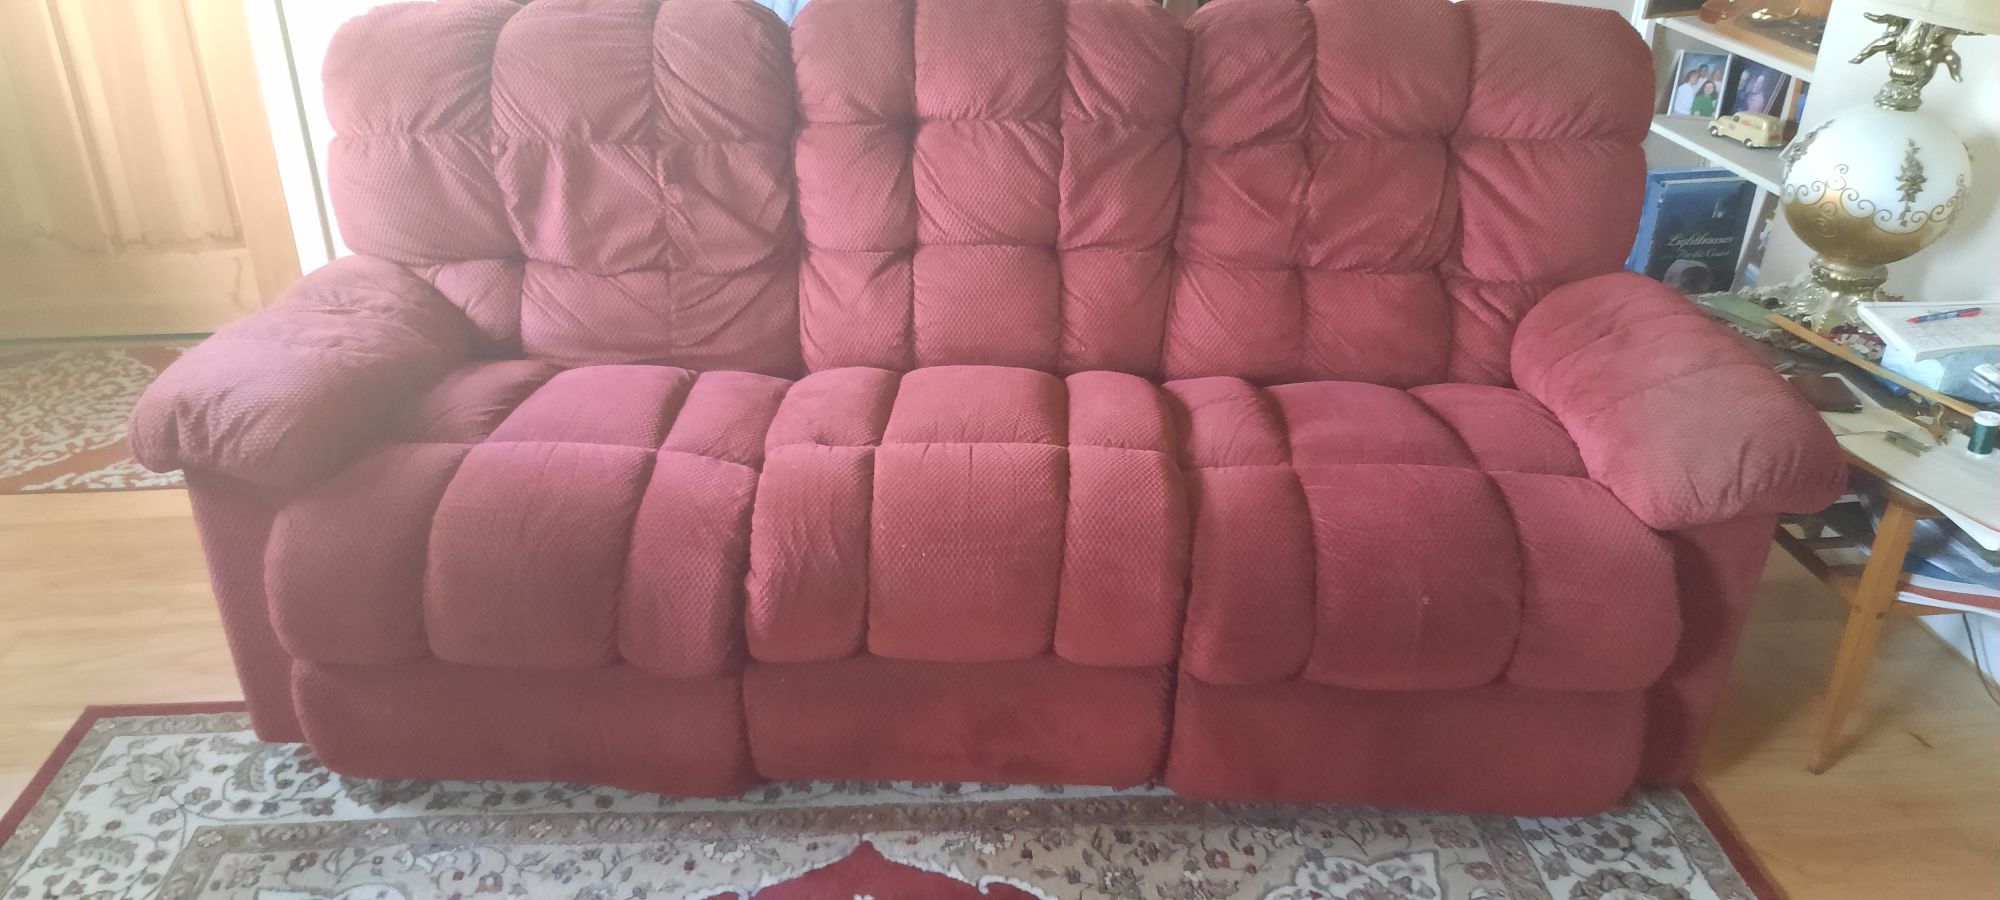 Free 7 foot sofa